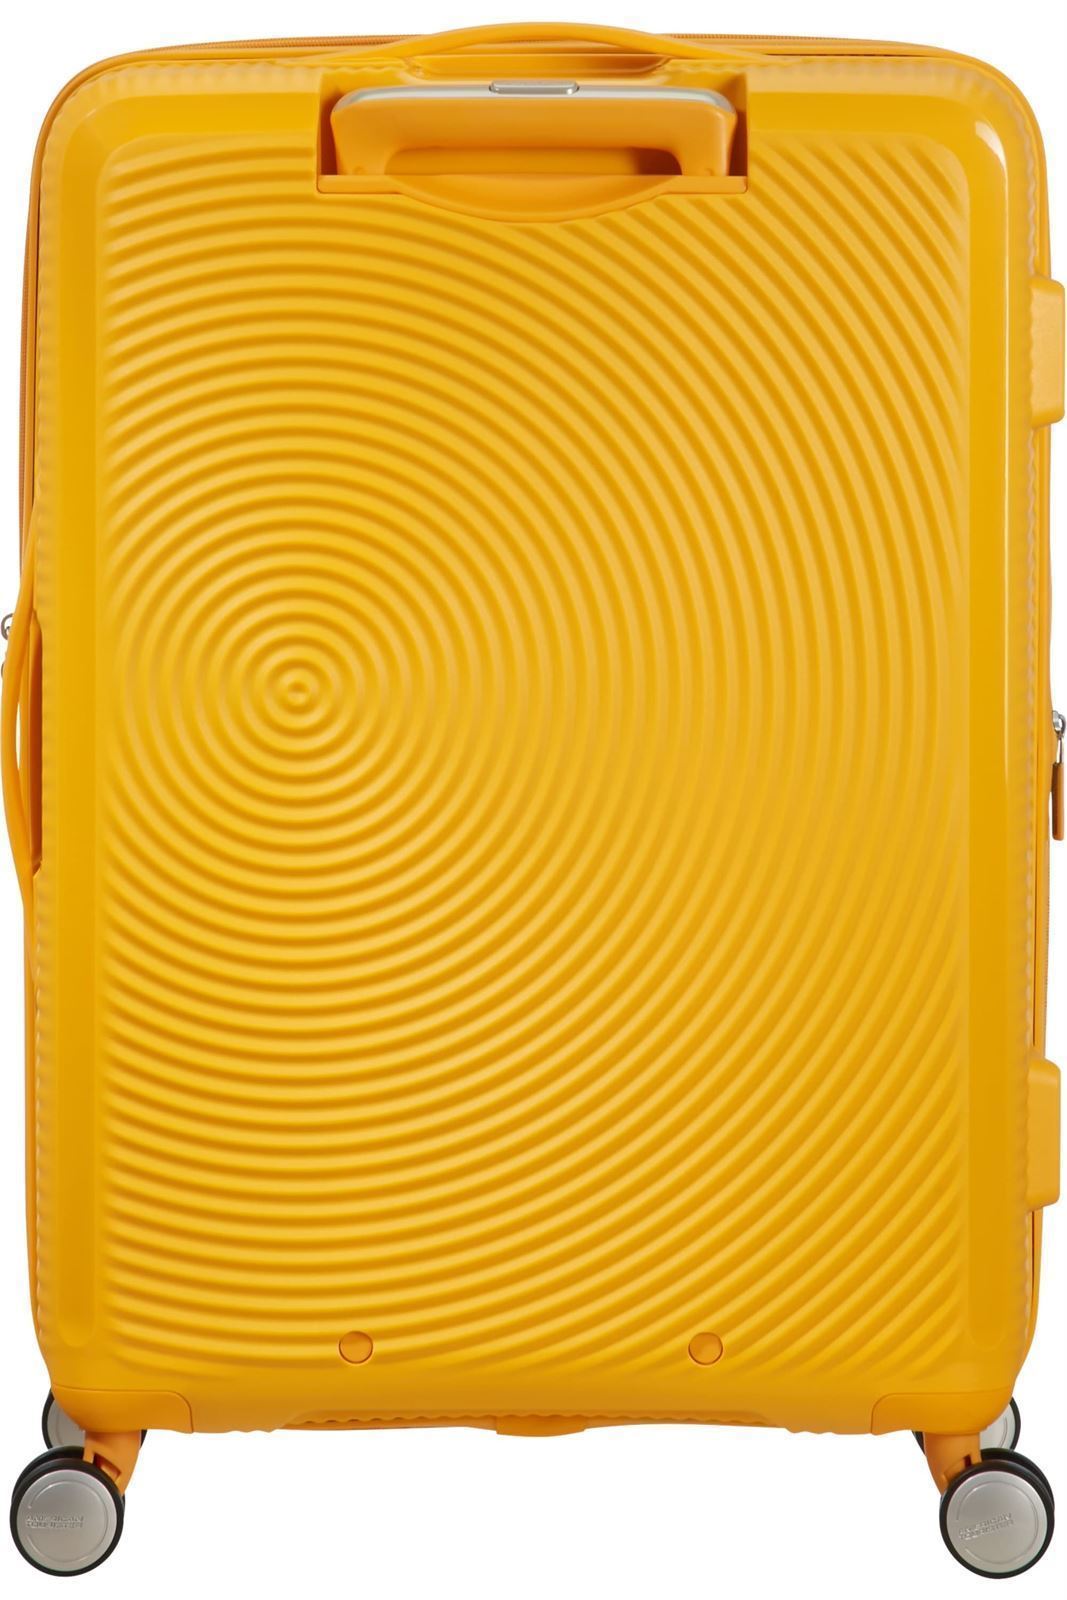 American Tourister Soundbox rigida mediana expandible amarilla 3 años de garantía - Imagen 4